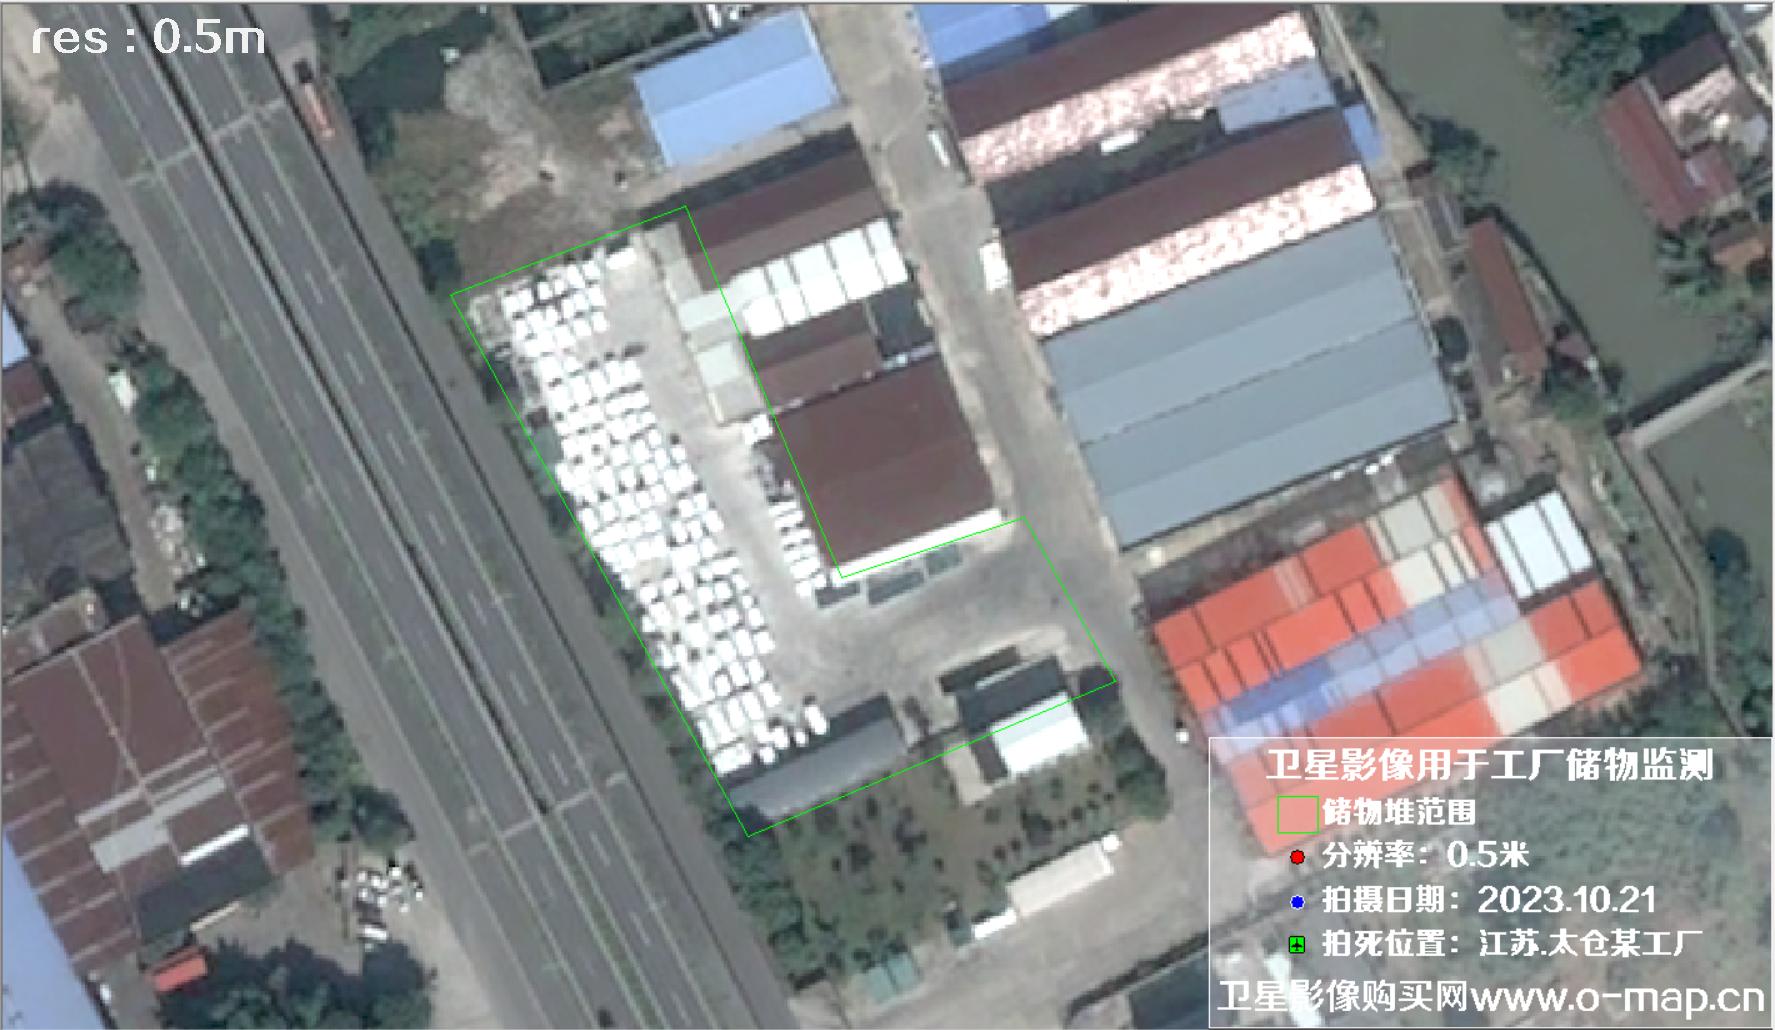 0.5米分辨率卫星图用于监测江苏省太仓市某工厂外仓货物的储存情况